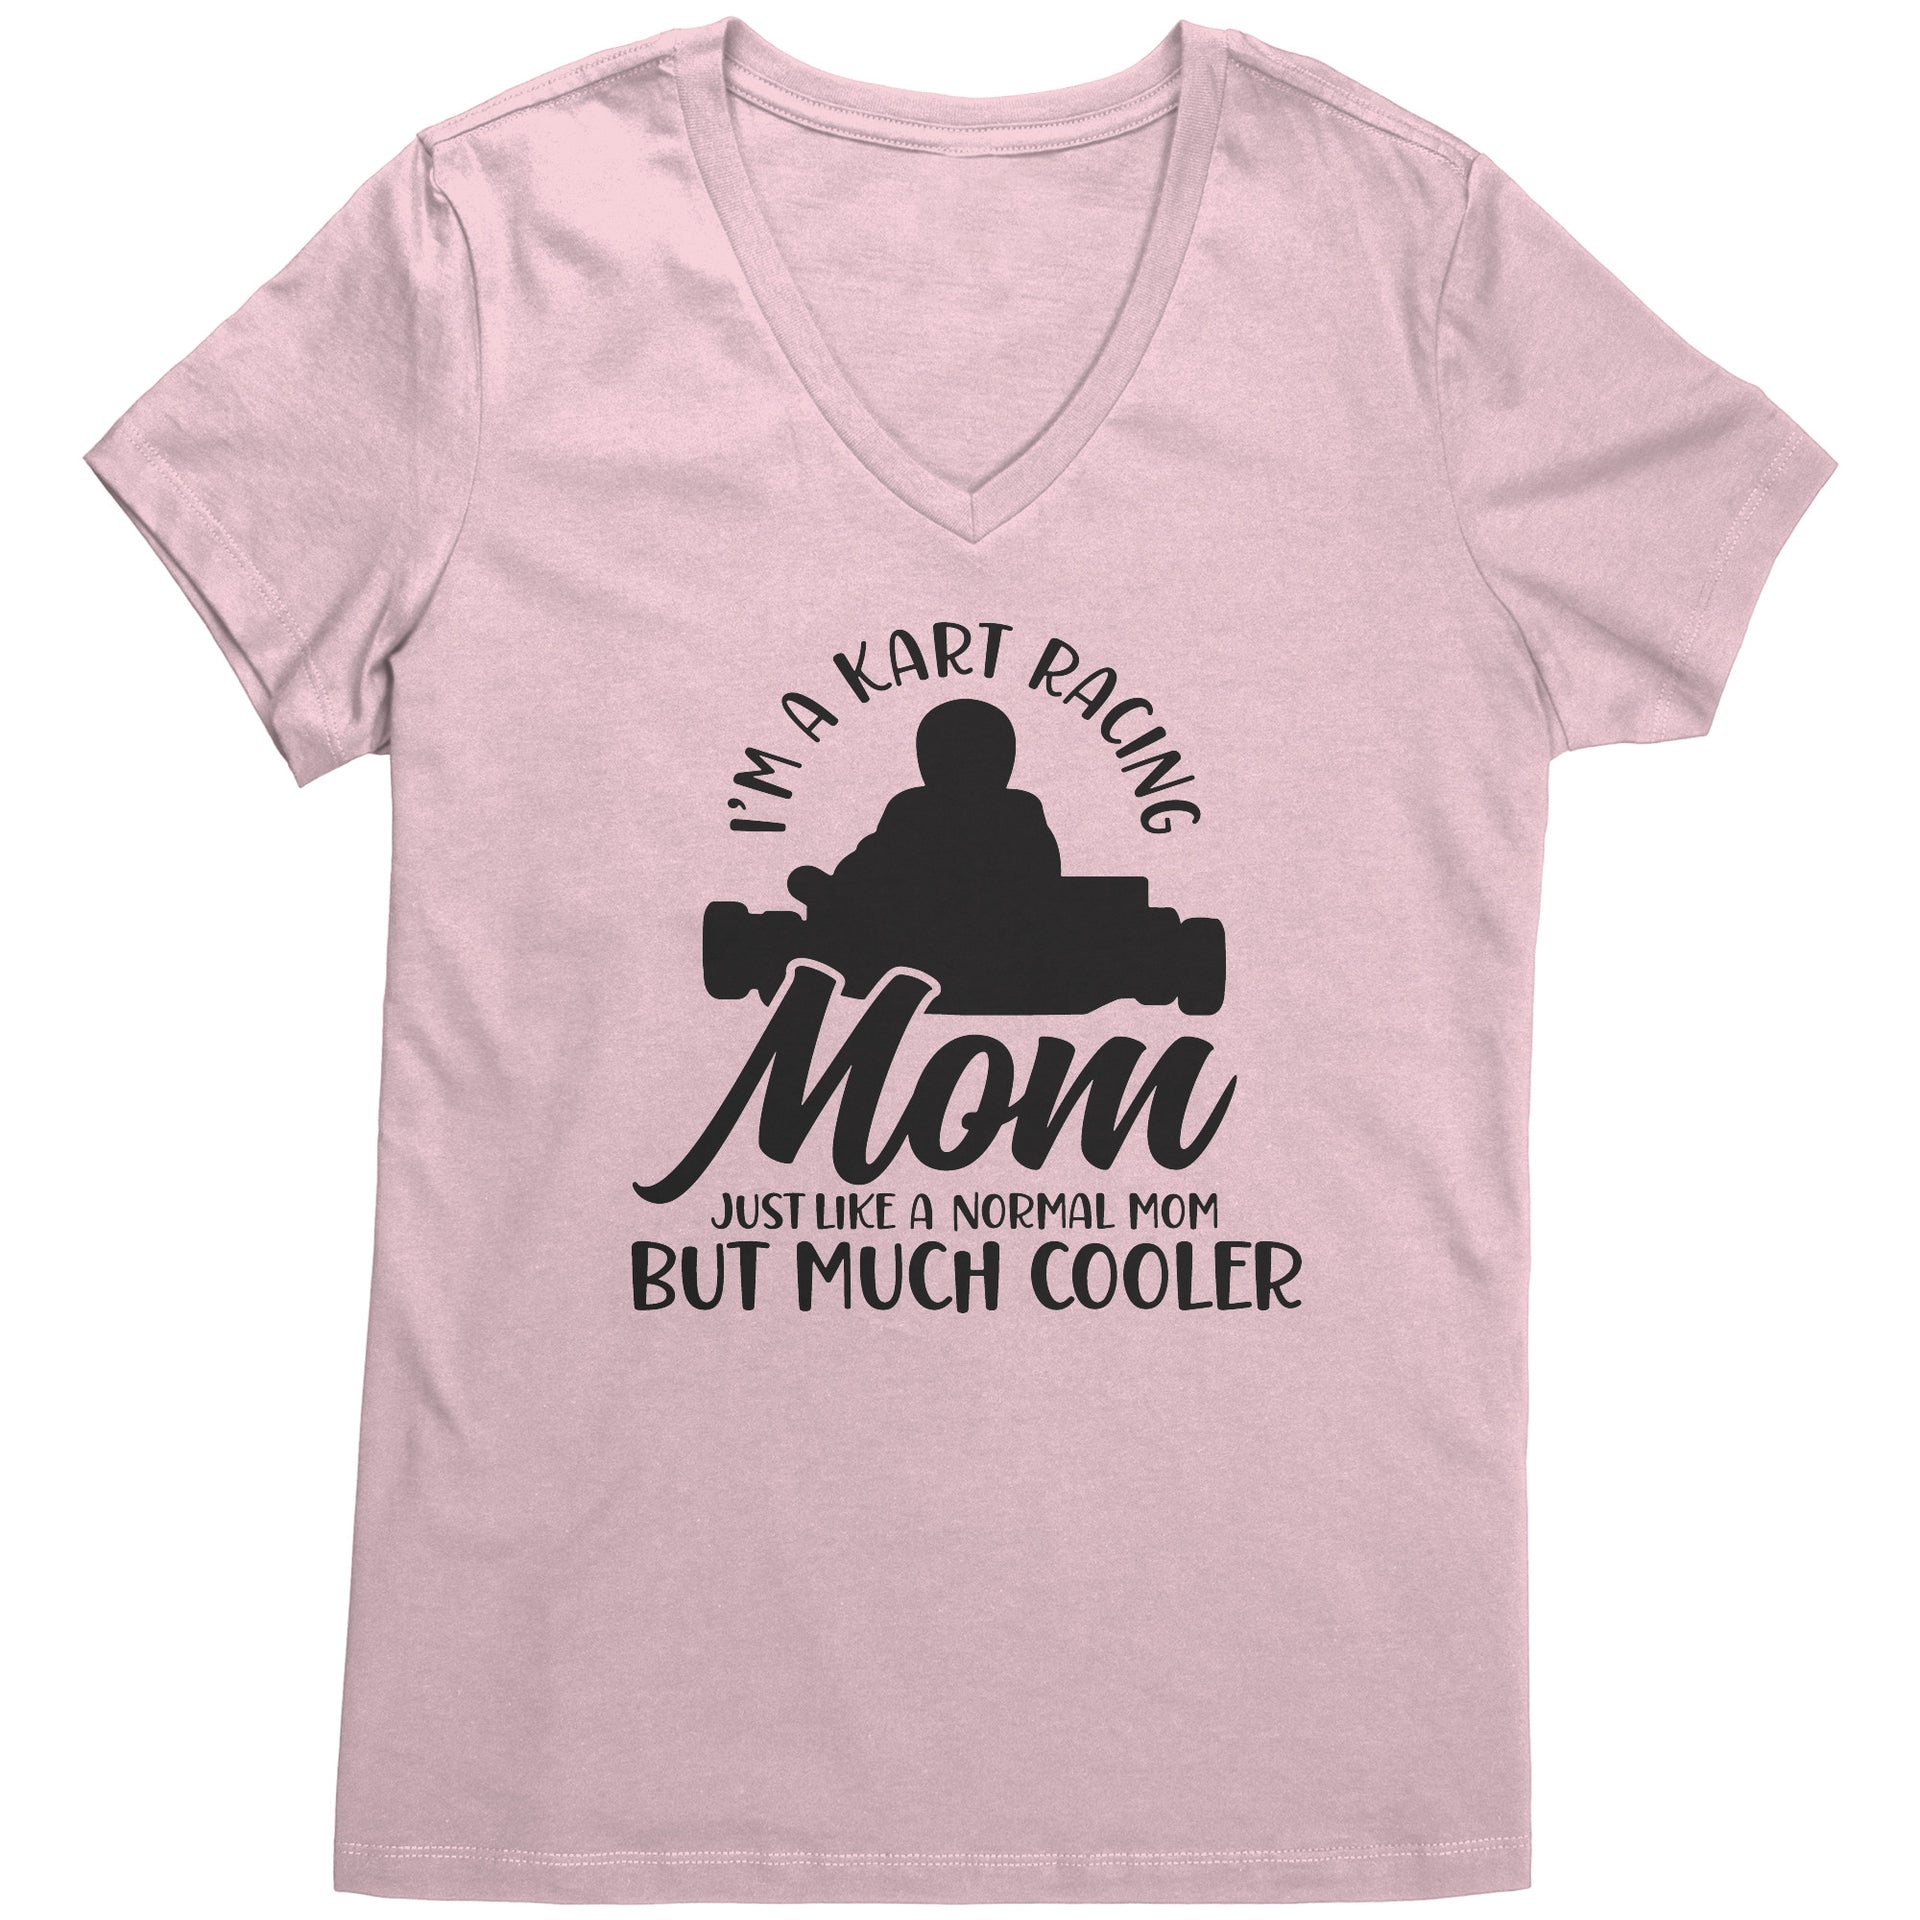 kart racing mom t-shirts